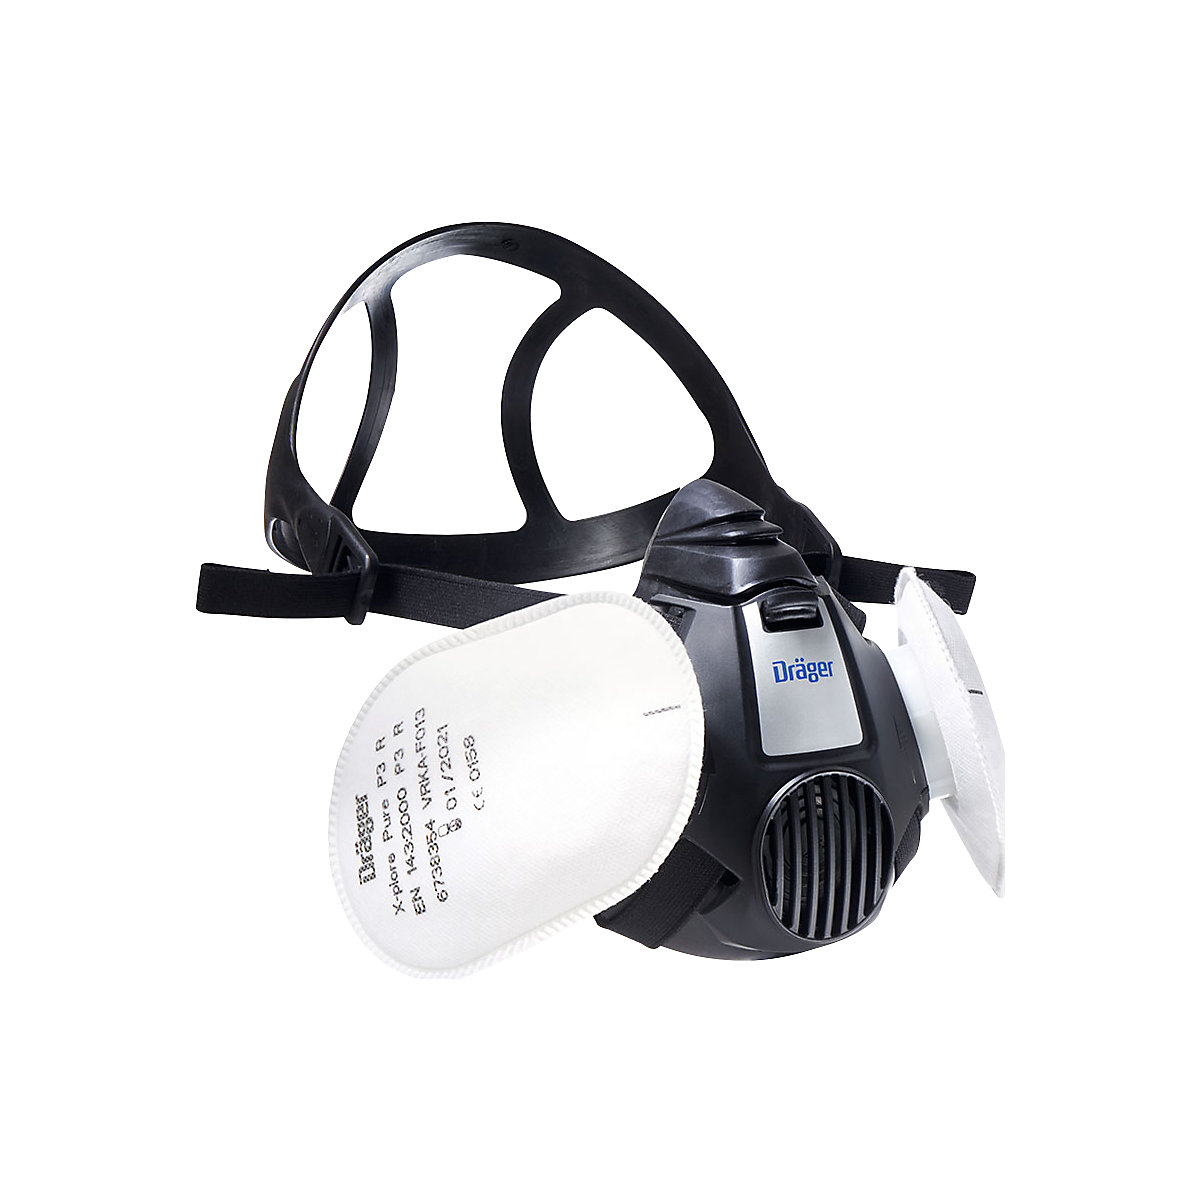 Dräger Set Halbmaske X-plore® 3300 inkl. 2 Filter für Lackierarbeiten, Bajonettverschluss, Größe M